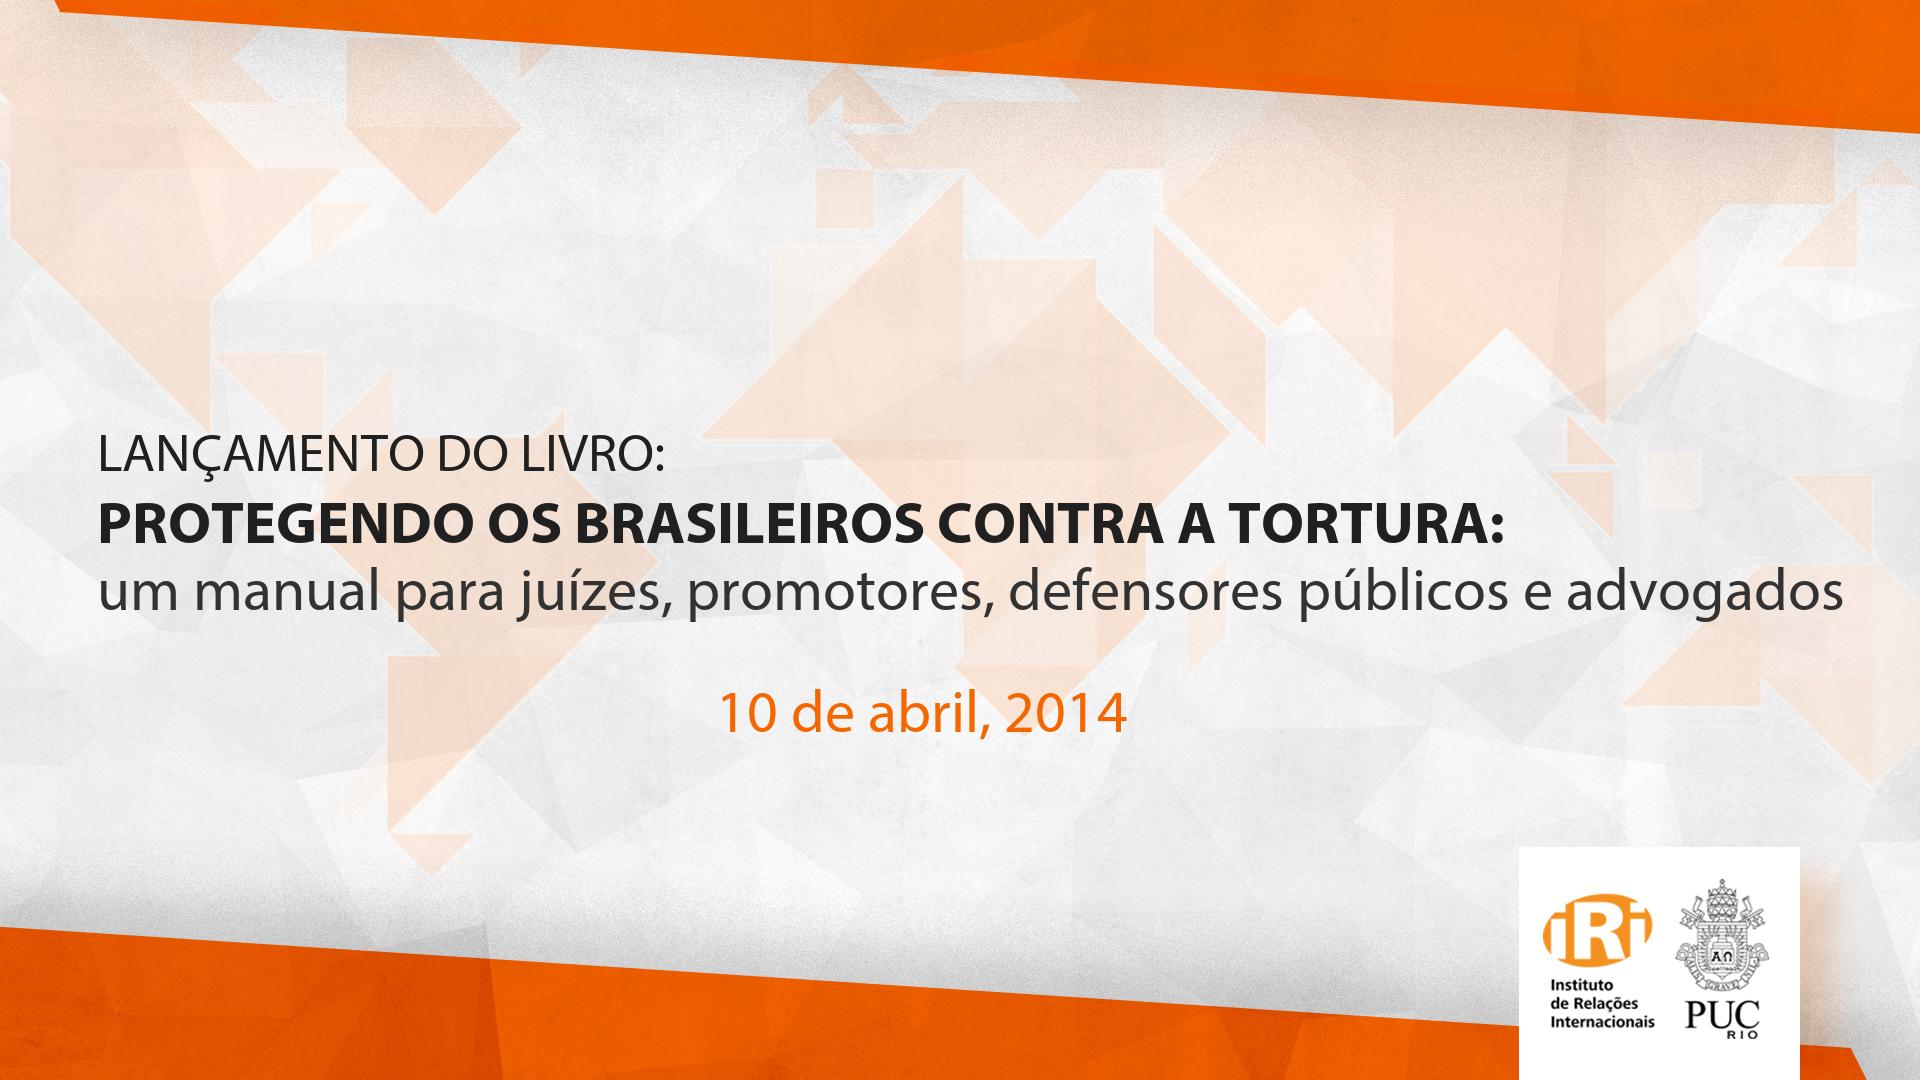 Lançamento do livro “Protegendo os Brasileiros Contra a Tortura – Um Manual para juízes, promotores, defensores públicos e advogados”